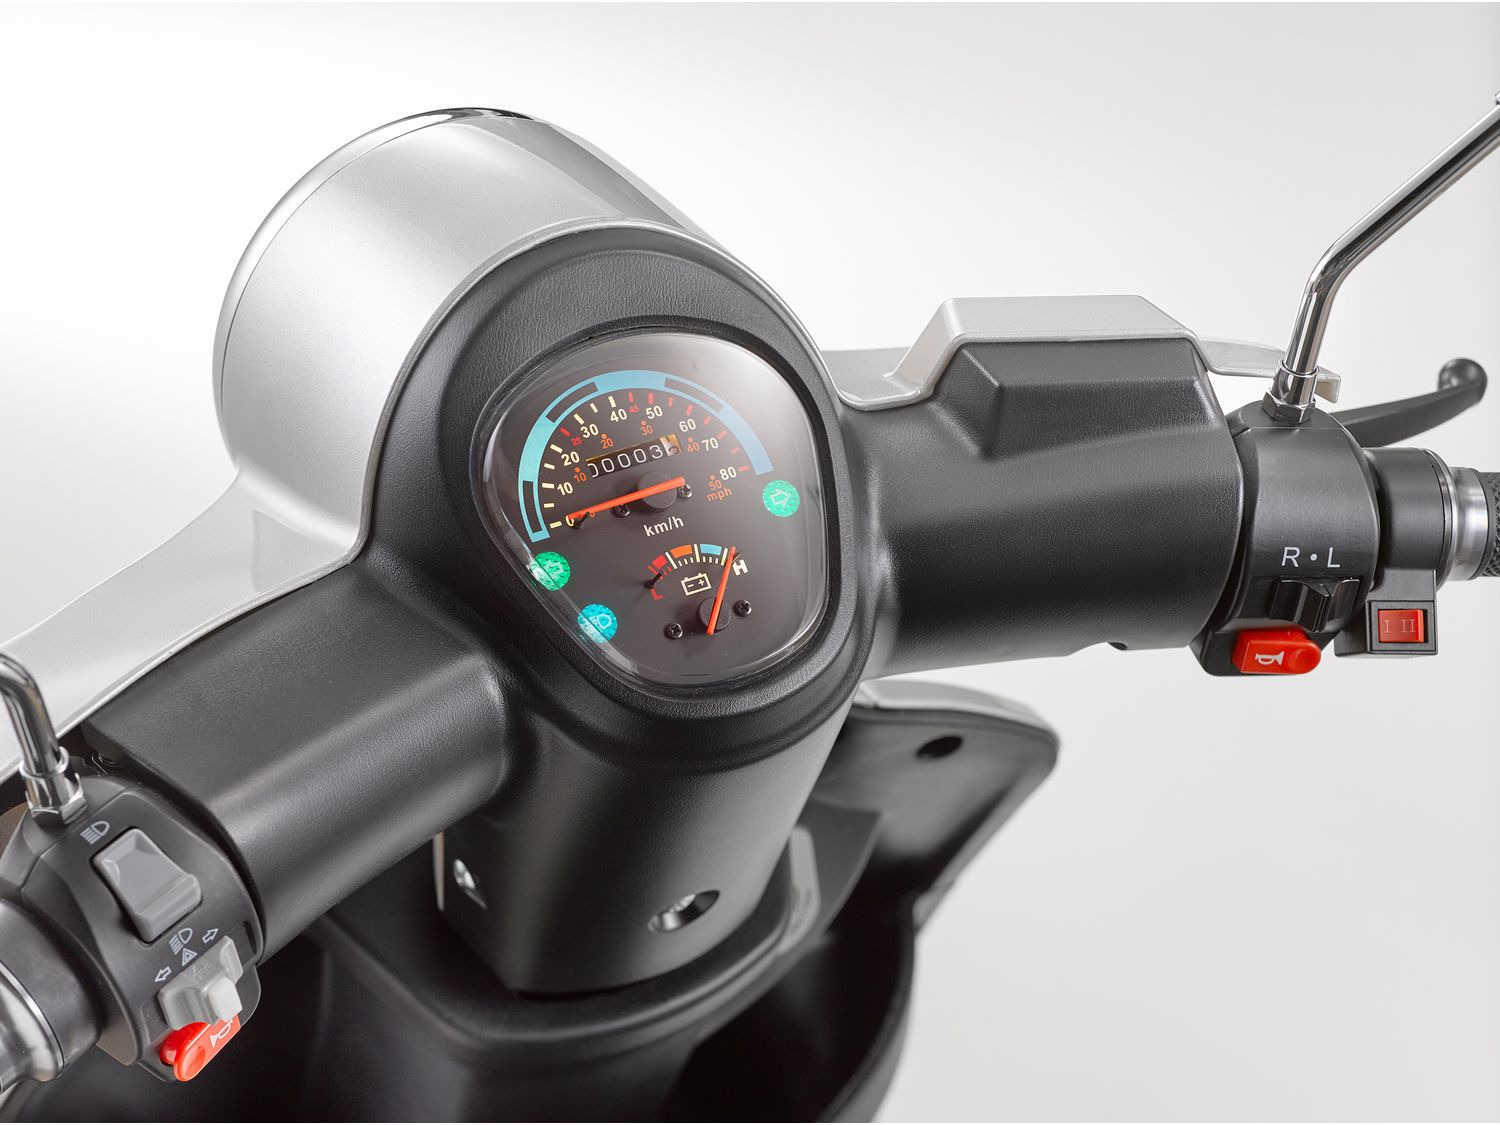 Luxxon Elektro Dreirad E3800 online kaufen | LIDL